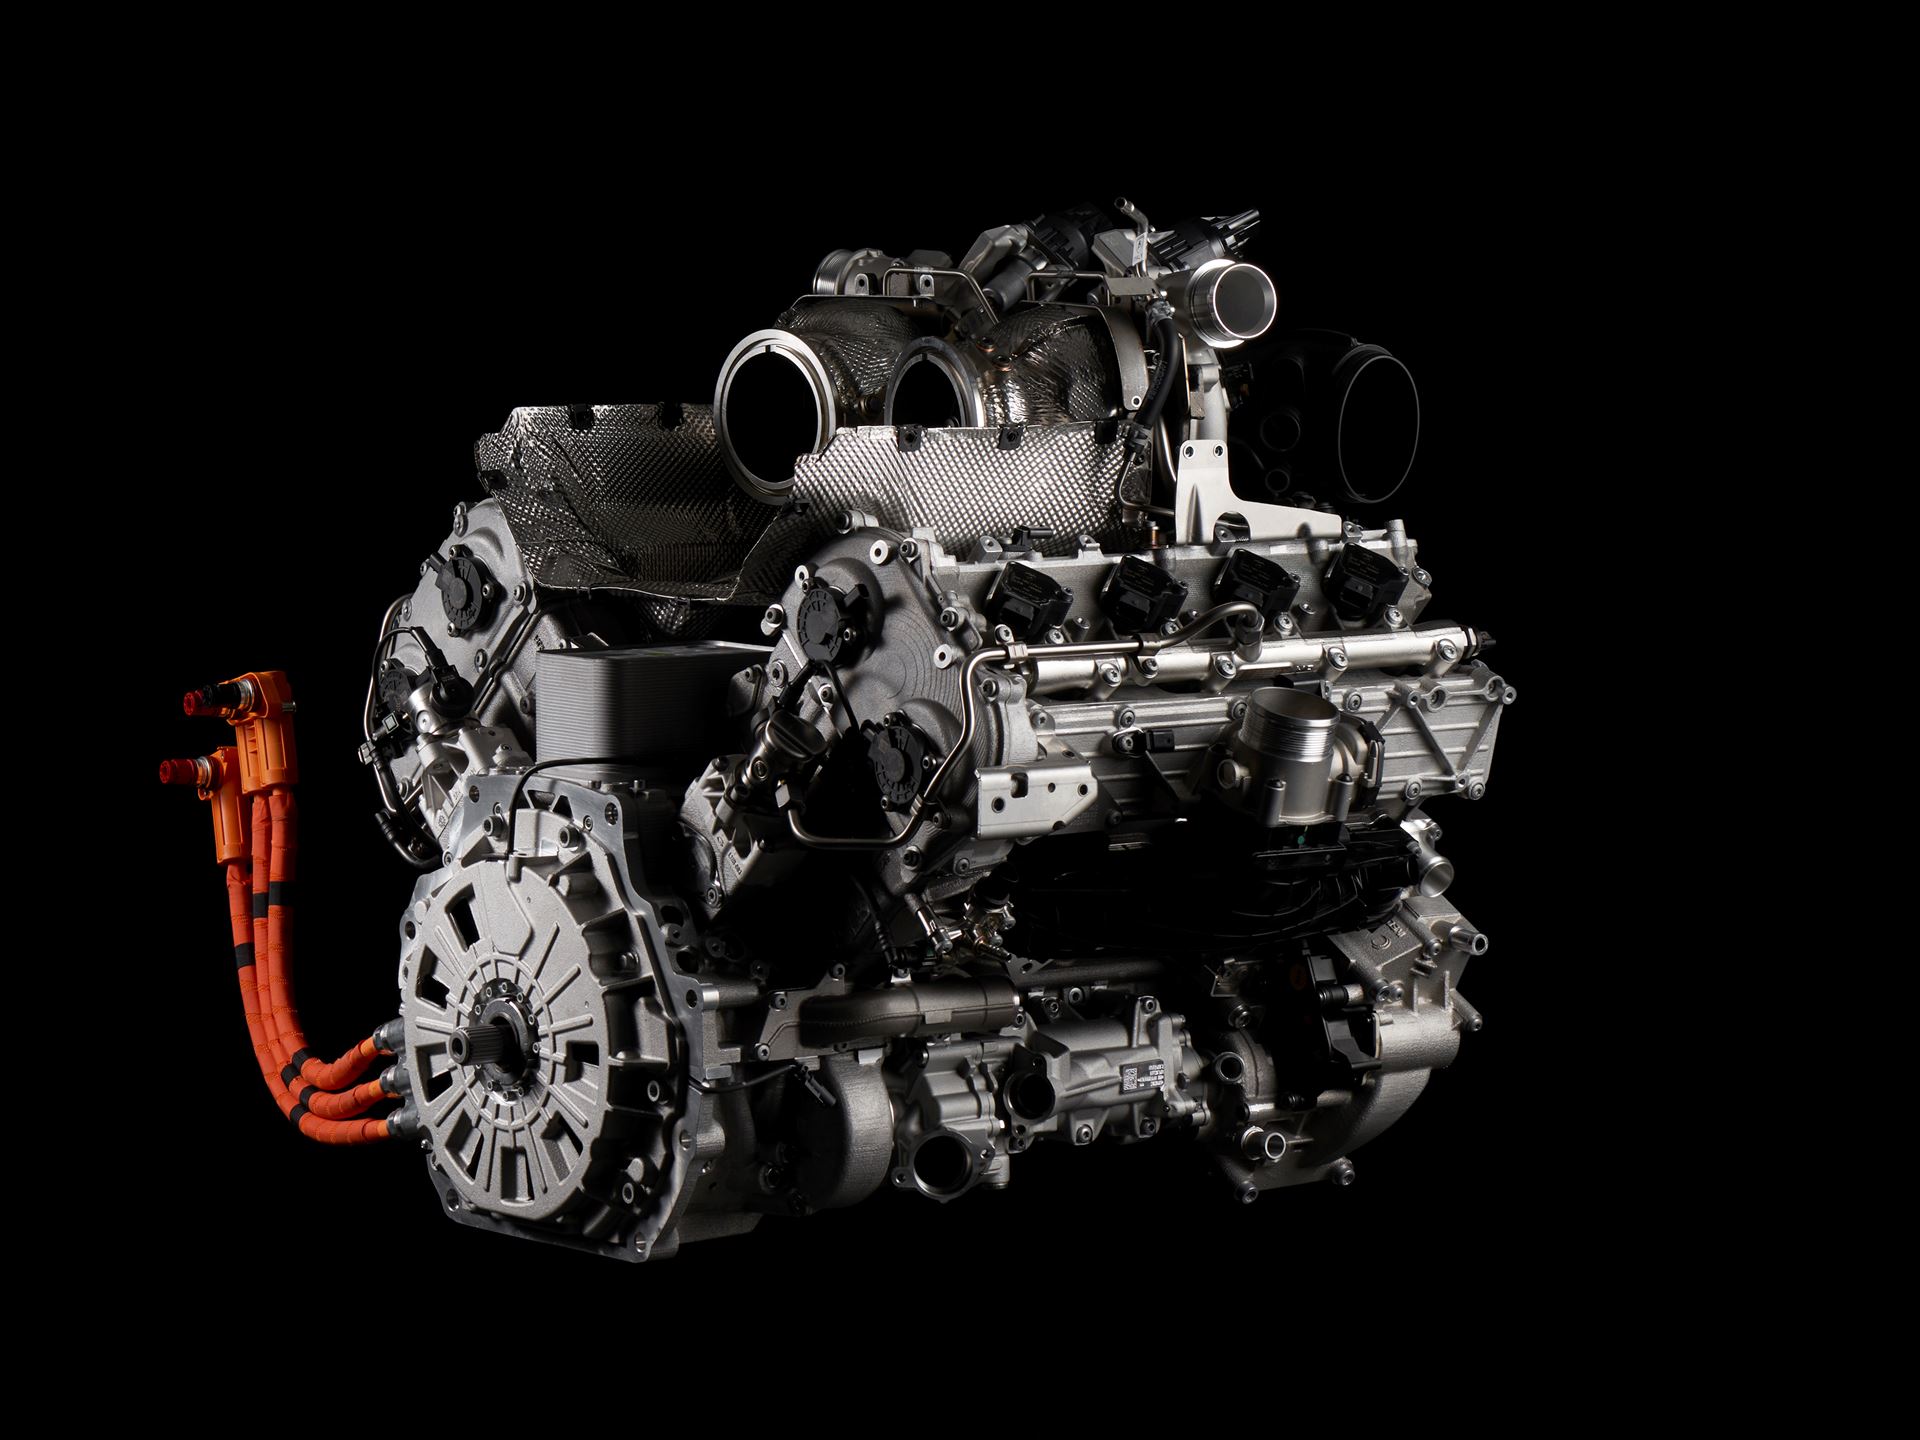 Próximo superdesportivo Lamborghini HPEV vai contar com motor V8 biturbo híbrido capaz de atingir as 10.000 rpm